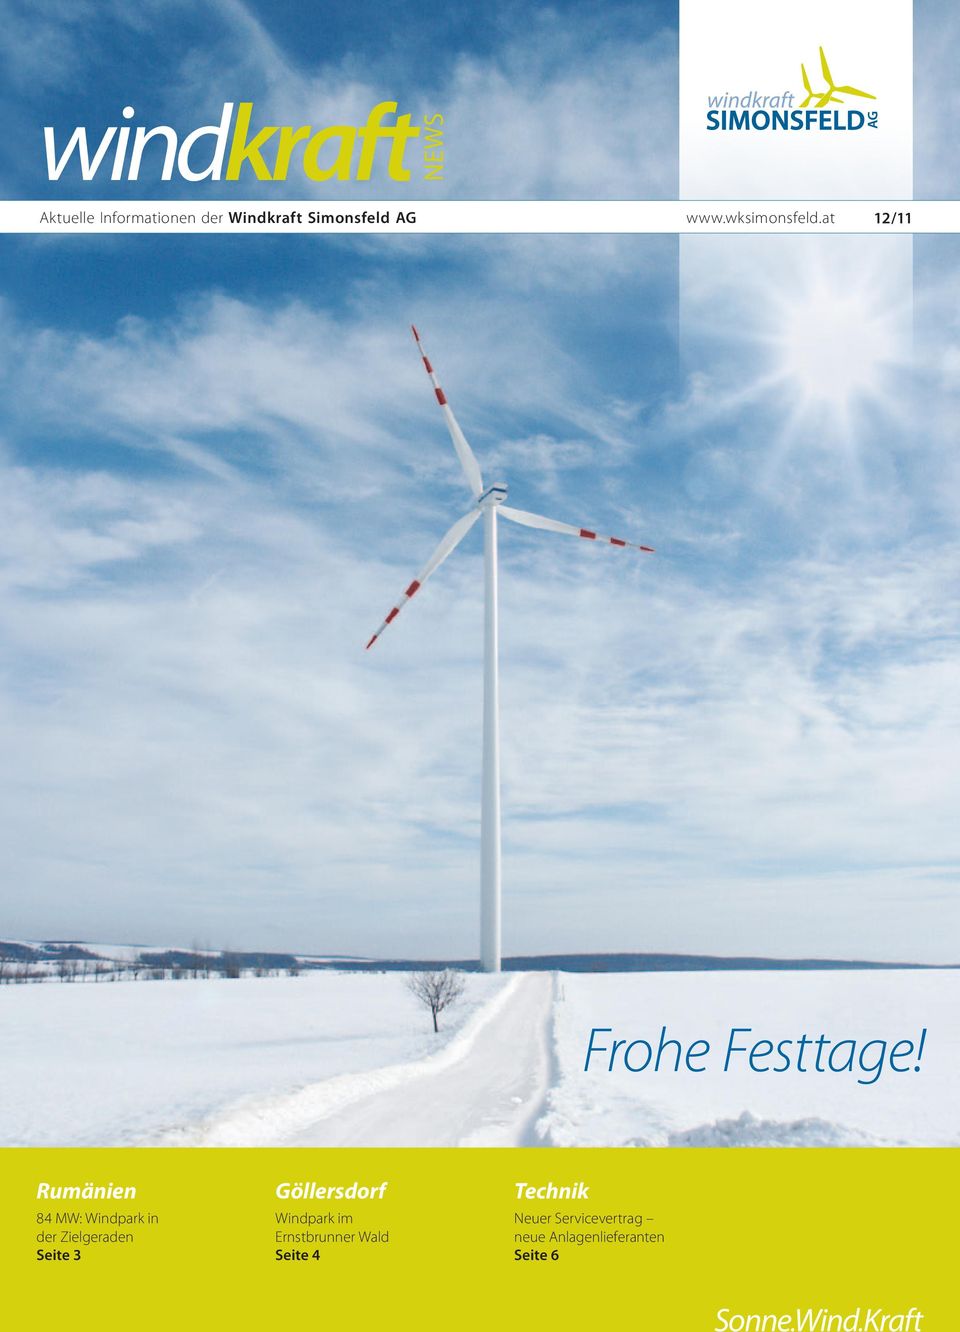 Rumänien 84 MW: Windpark in der Zielgeraden Seite 3 Göllersdorf